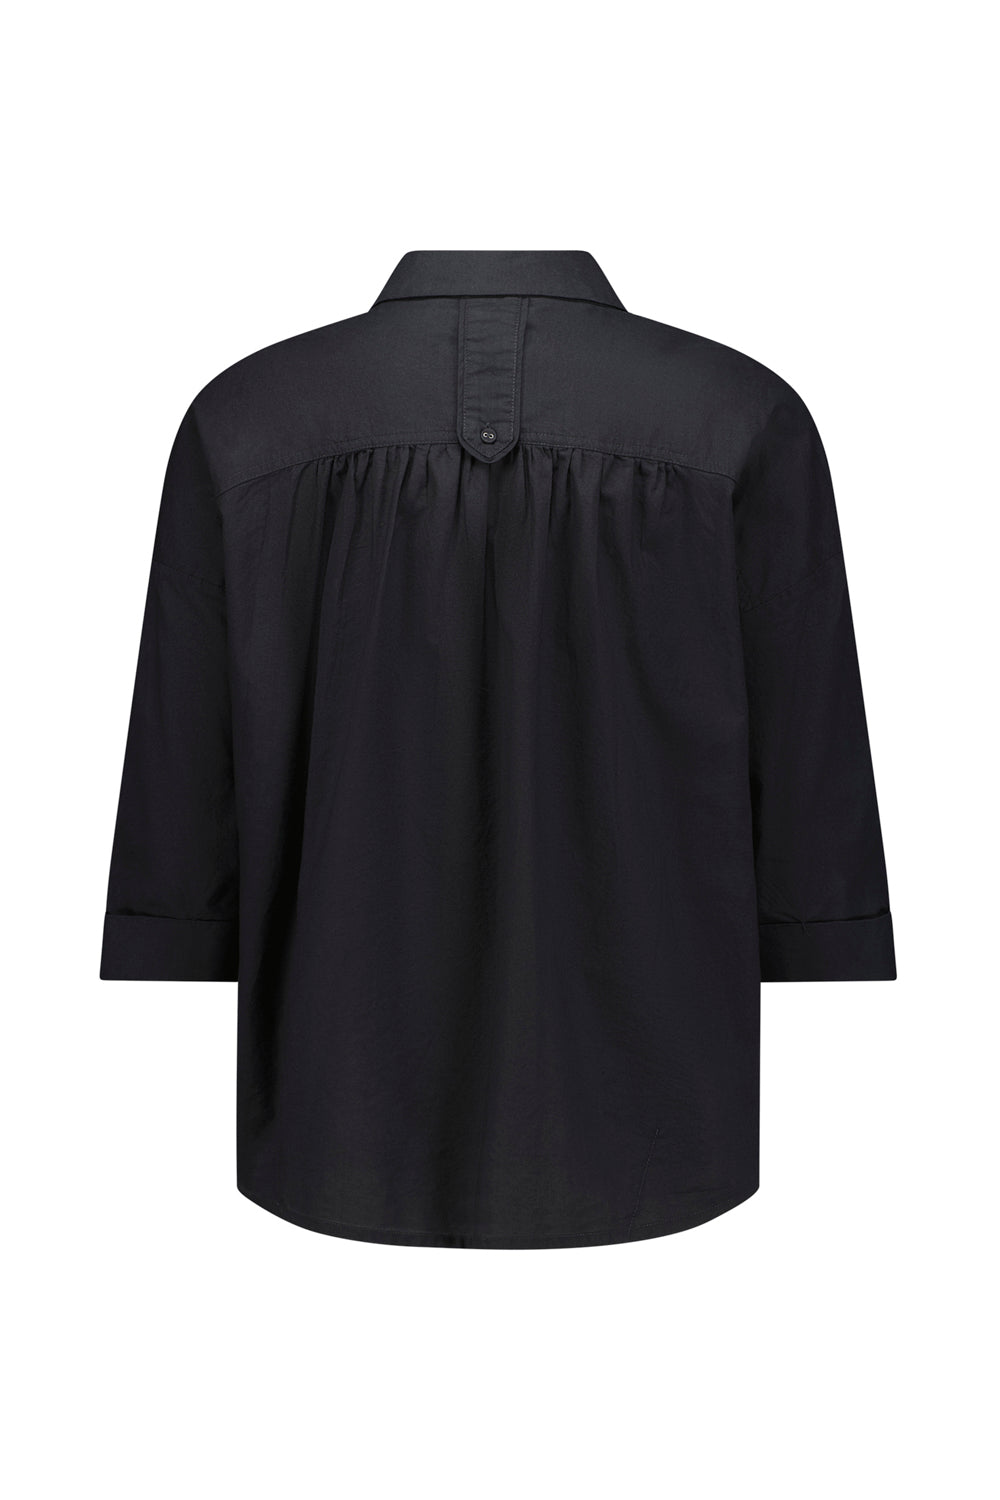 Harris Shirt - Black - Shirt VERGE